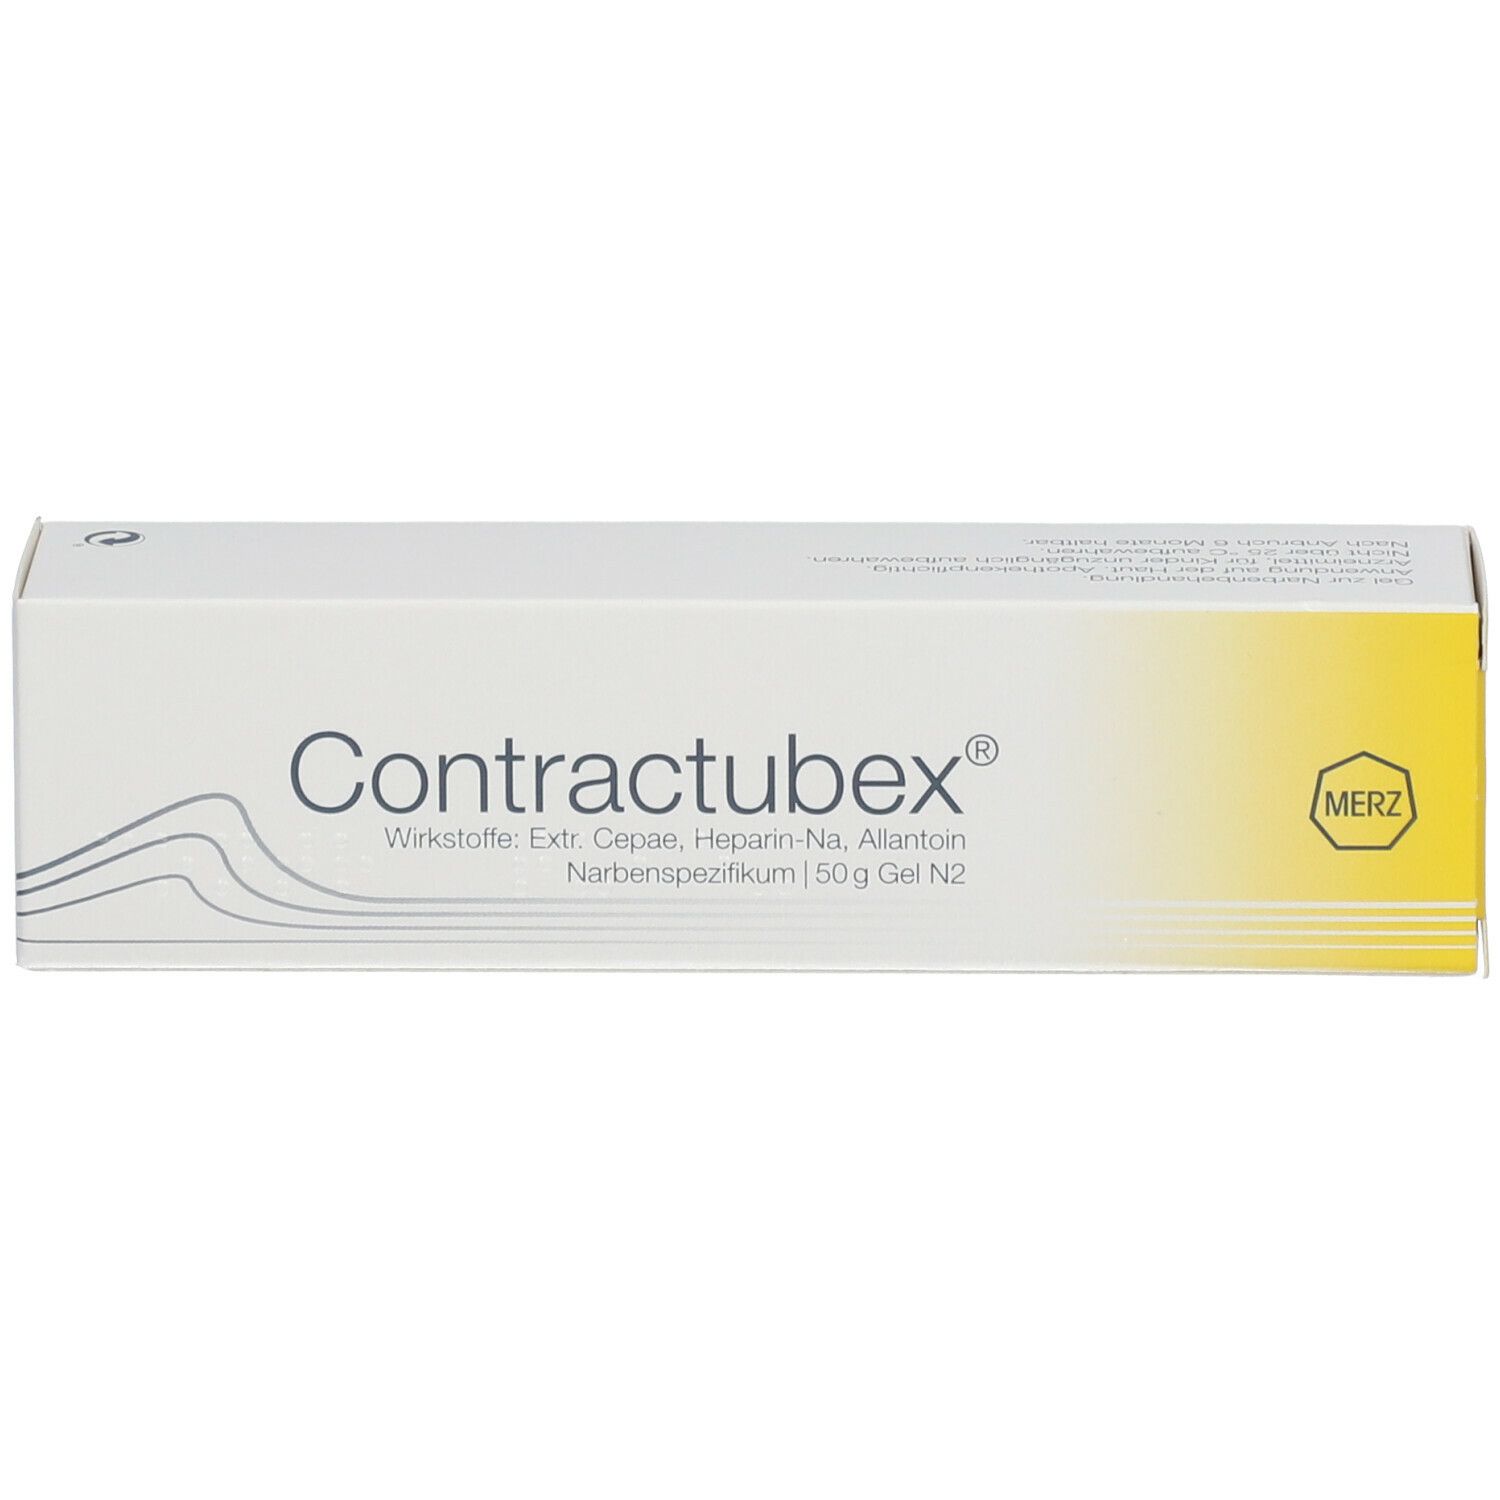 Contractubex®